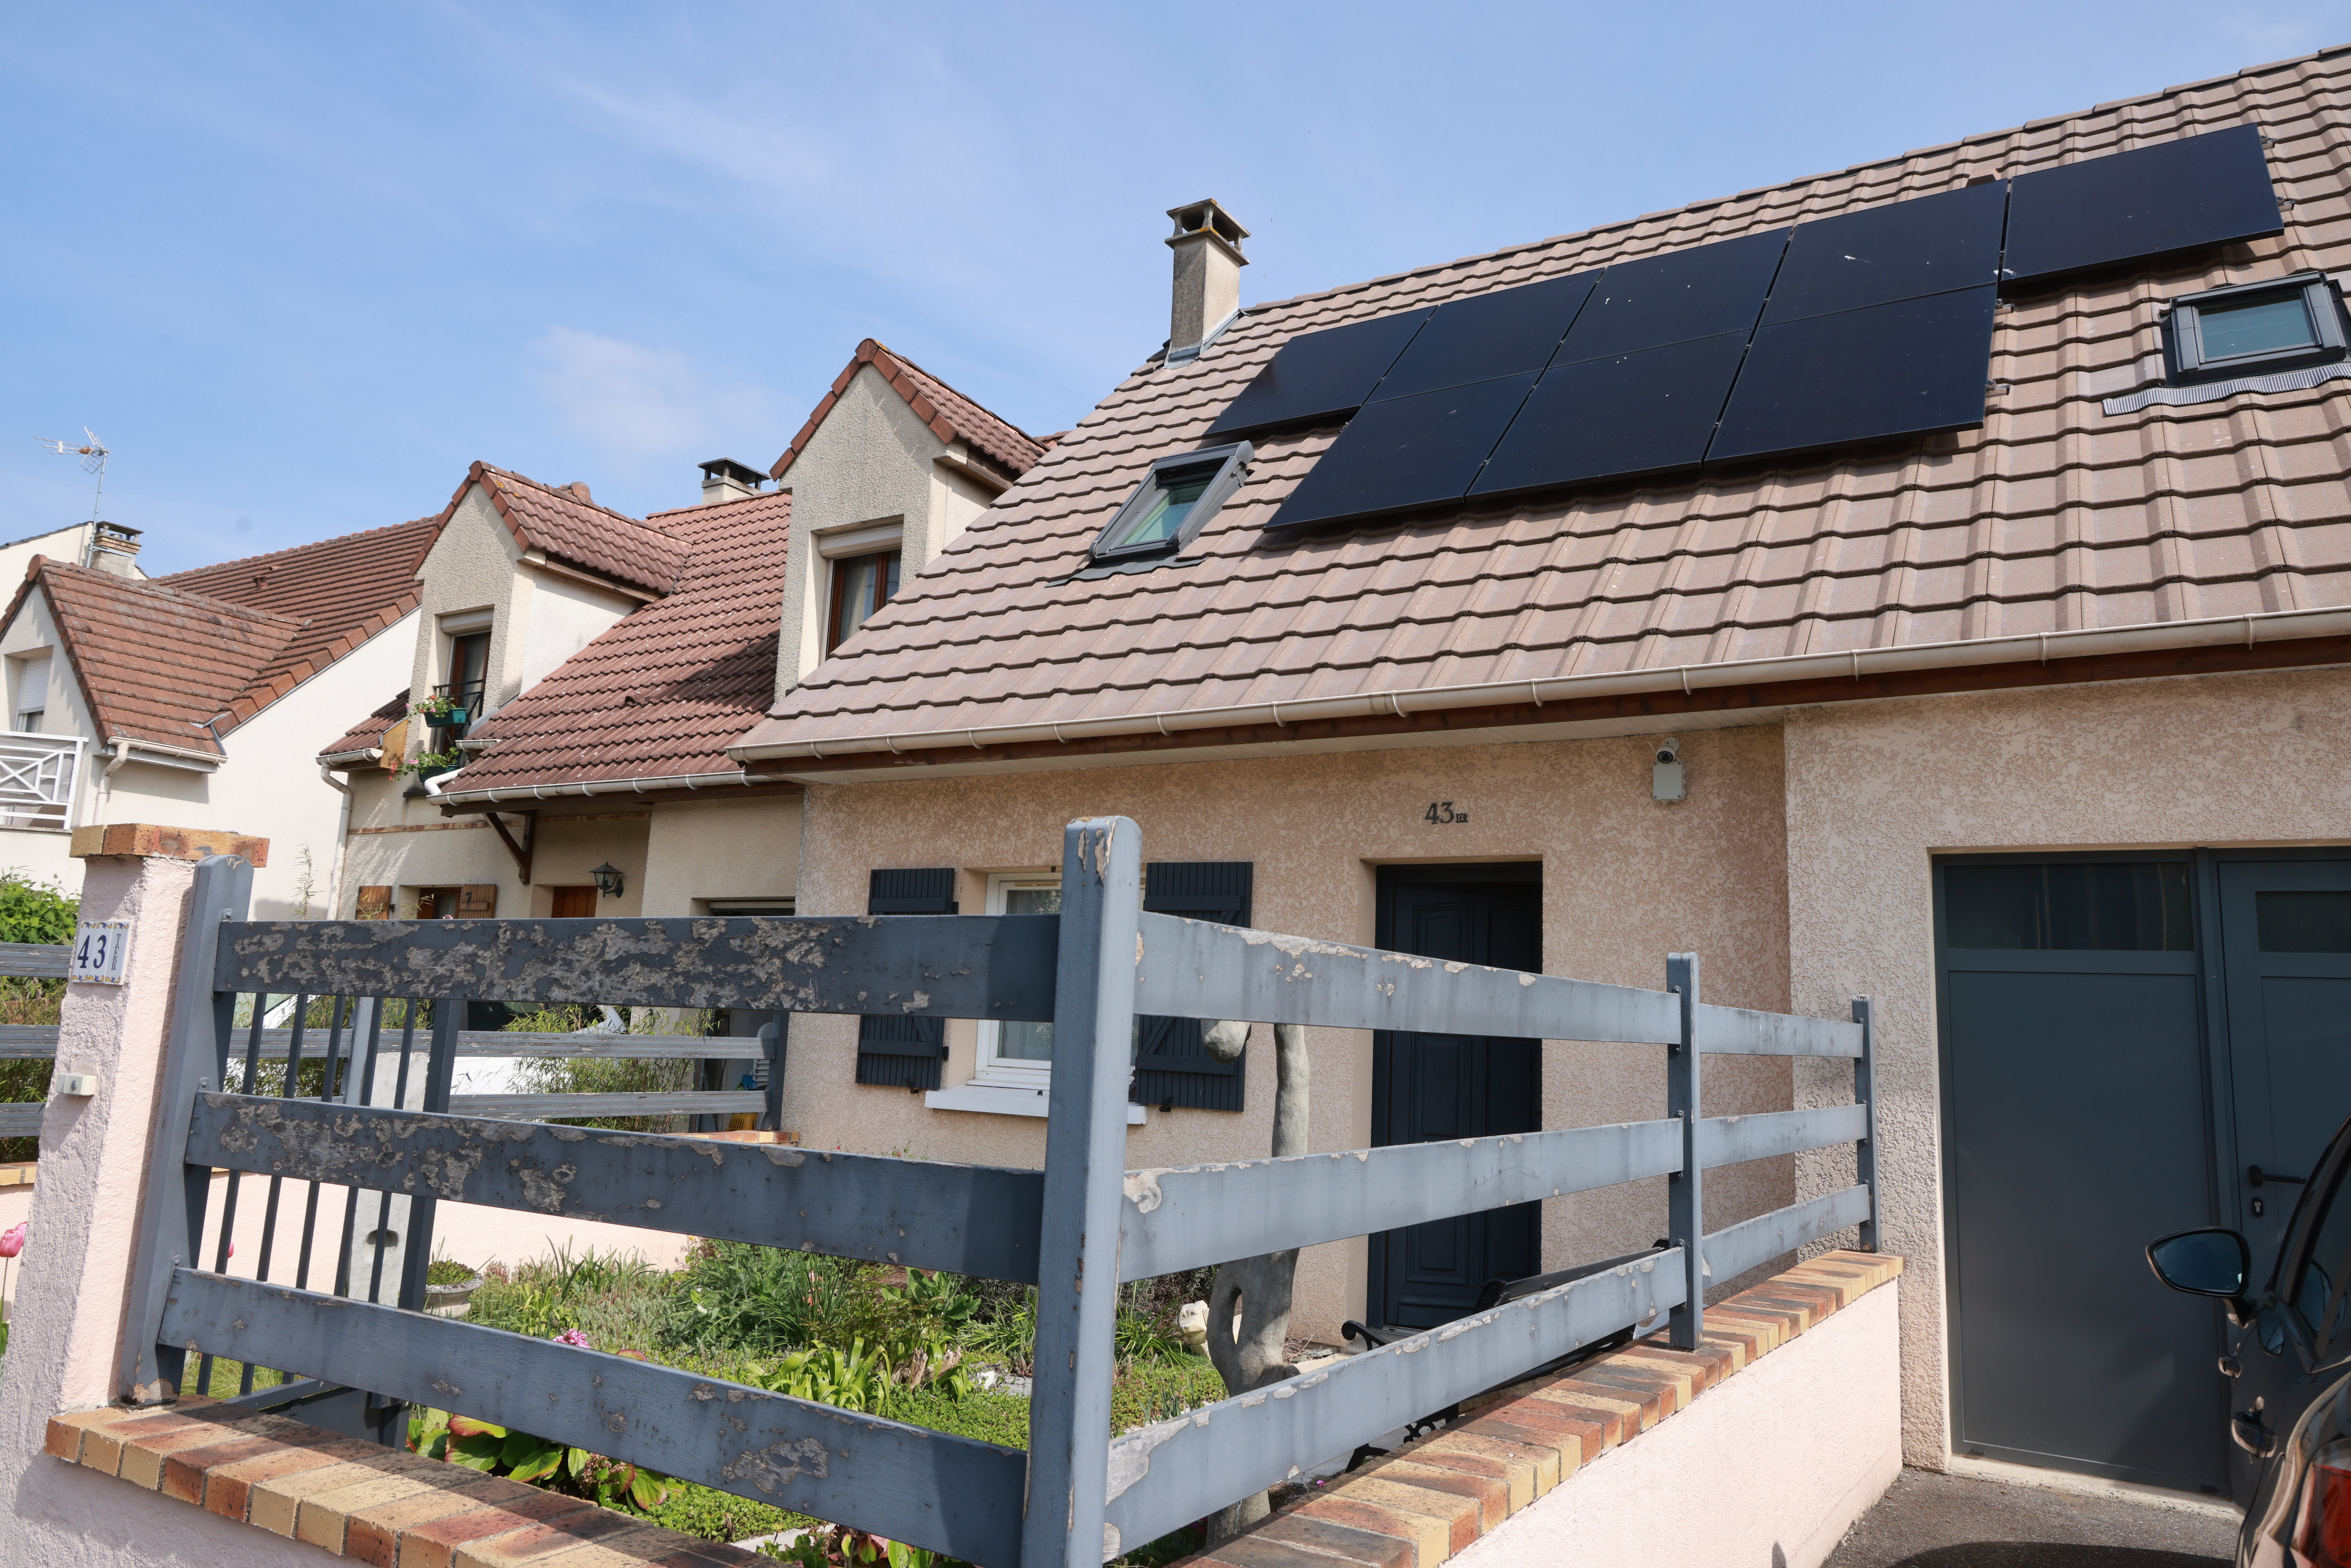 Le cadastre solaire permet de connaître le potentiel ensoleillement de son logement selon la surface disponible du toit, son exposition et la végétation environnante. LP/Philippe Lavieille